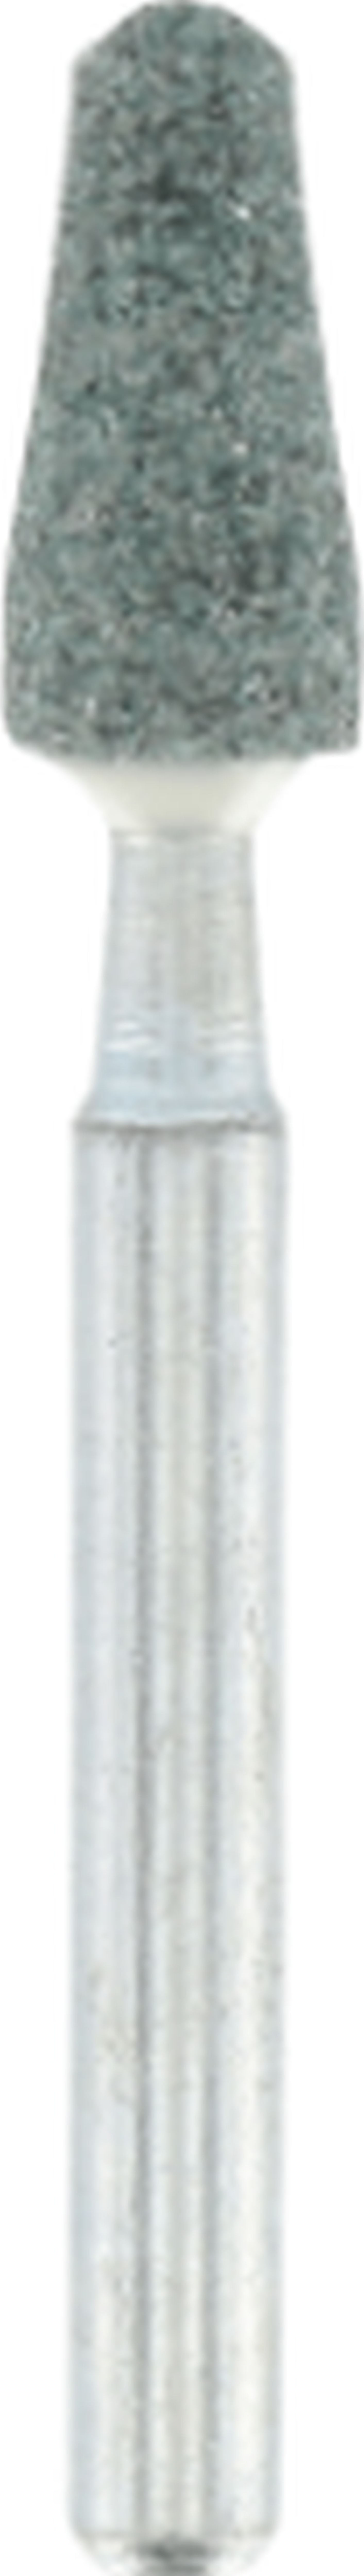 DREMEL Brusné tělísko z karbidu křemičitého 4,8 mm 26154922JA